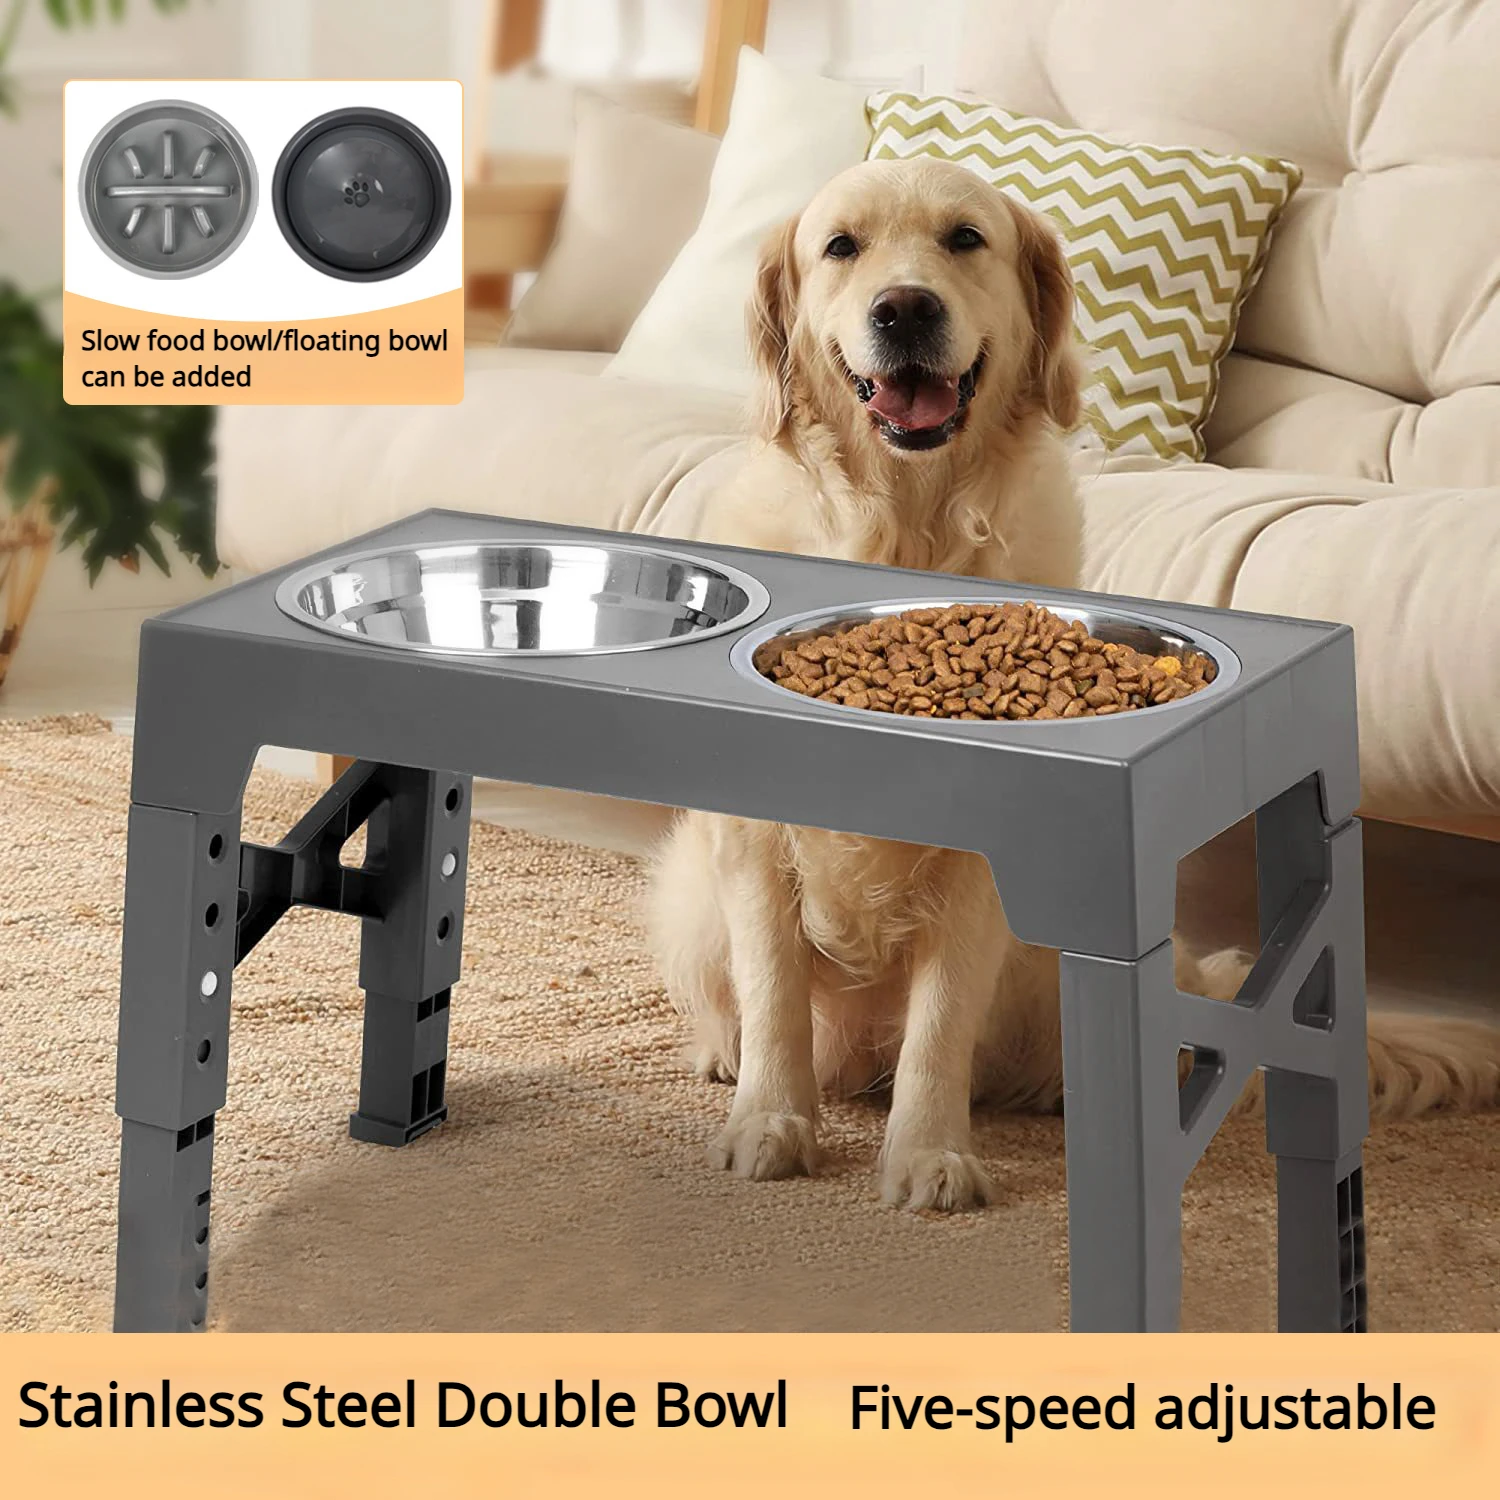 

Elevated Dog Bowls Adjustable Dog Feeder for Medium Large Dogs Protect Pet Cervical Spine Dog Food Bowl Raised Pet Bowl Stand